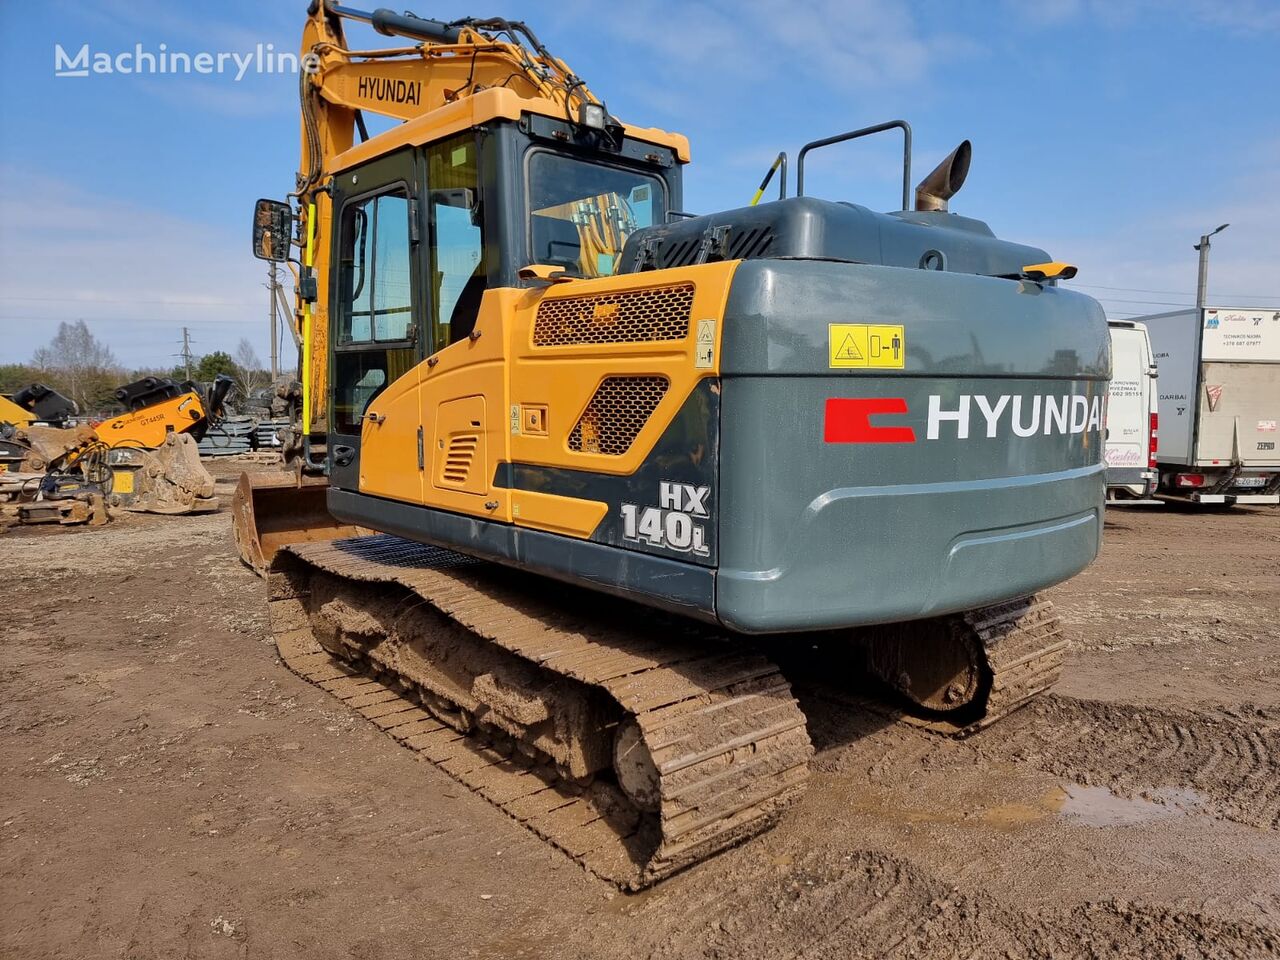 Hyundai HX140 L tracked excavator